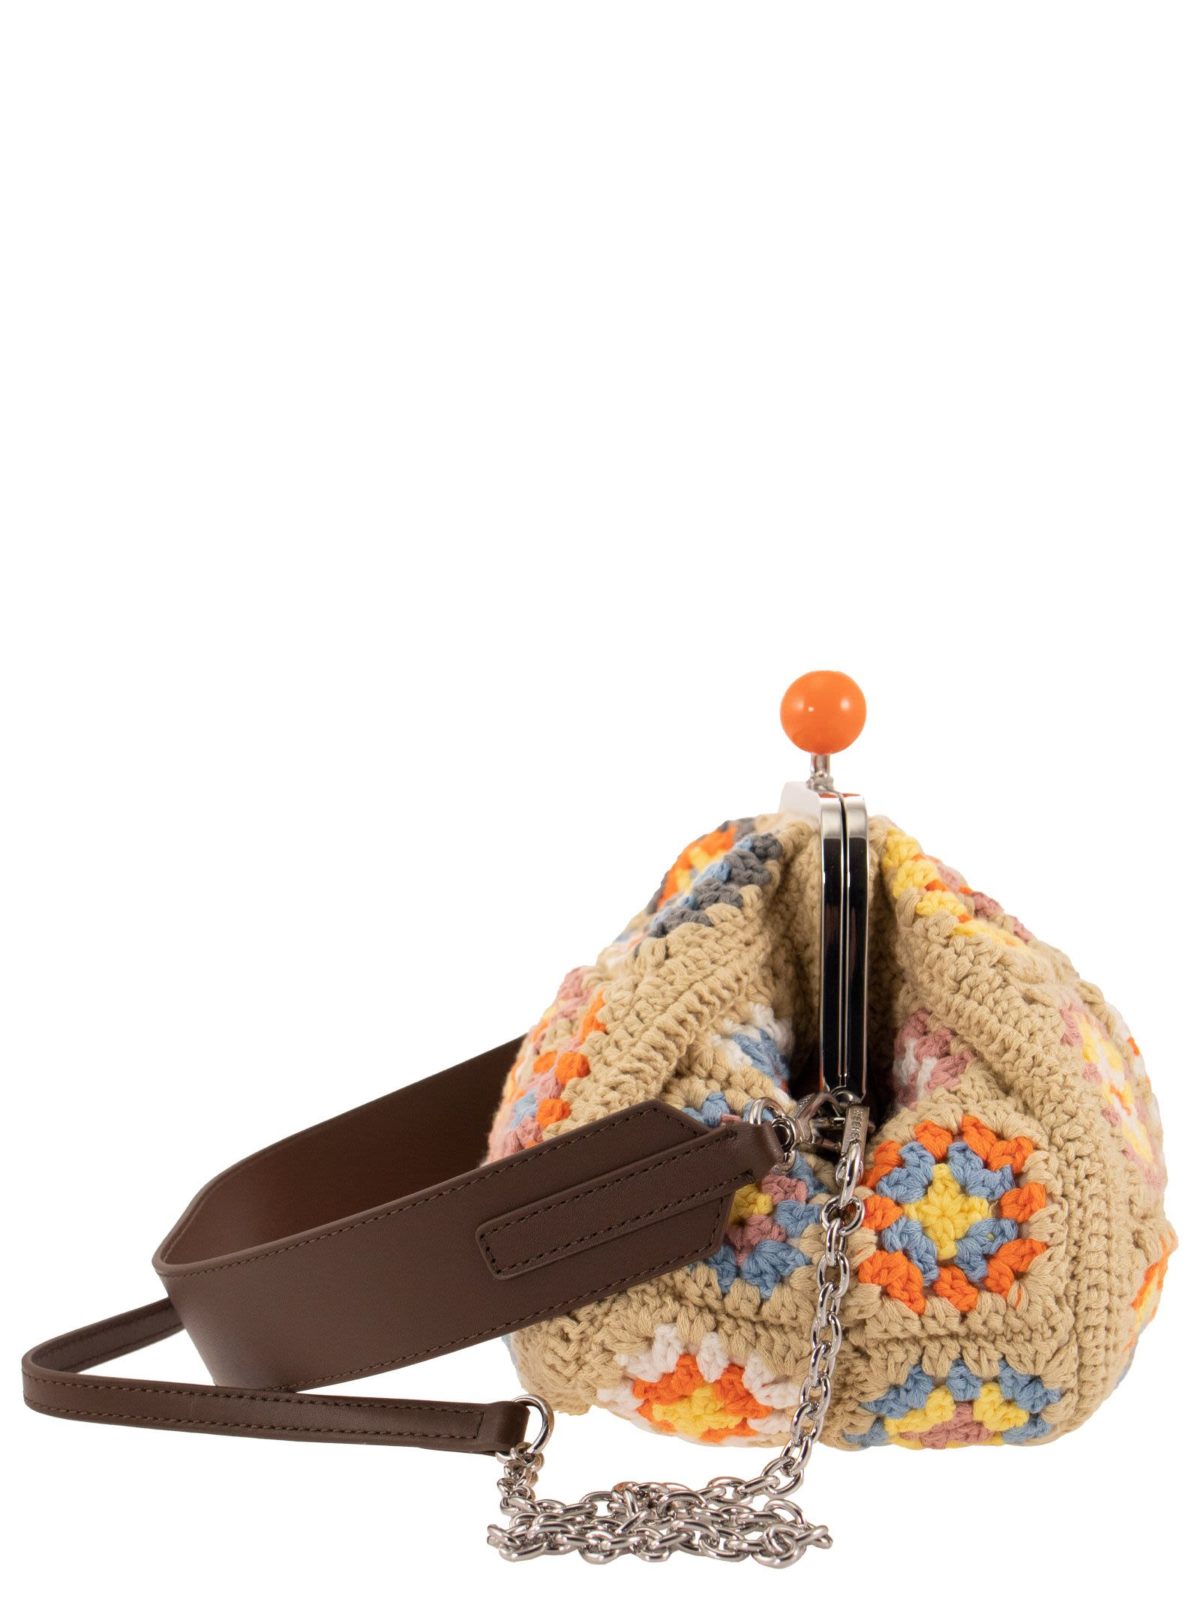 NEMBO - Pasticcino Bag in cotone crochet - Bellettini.com